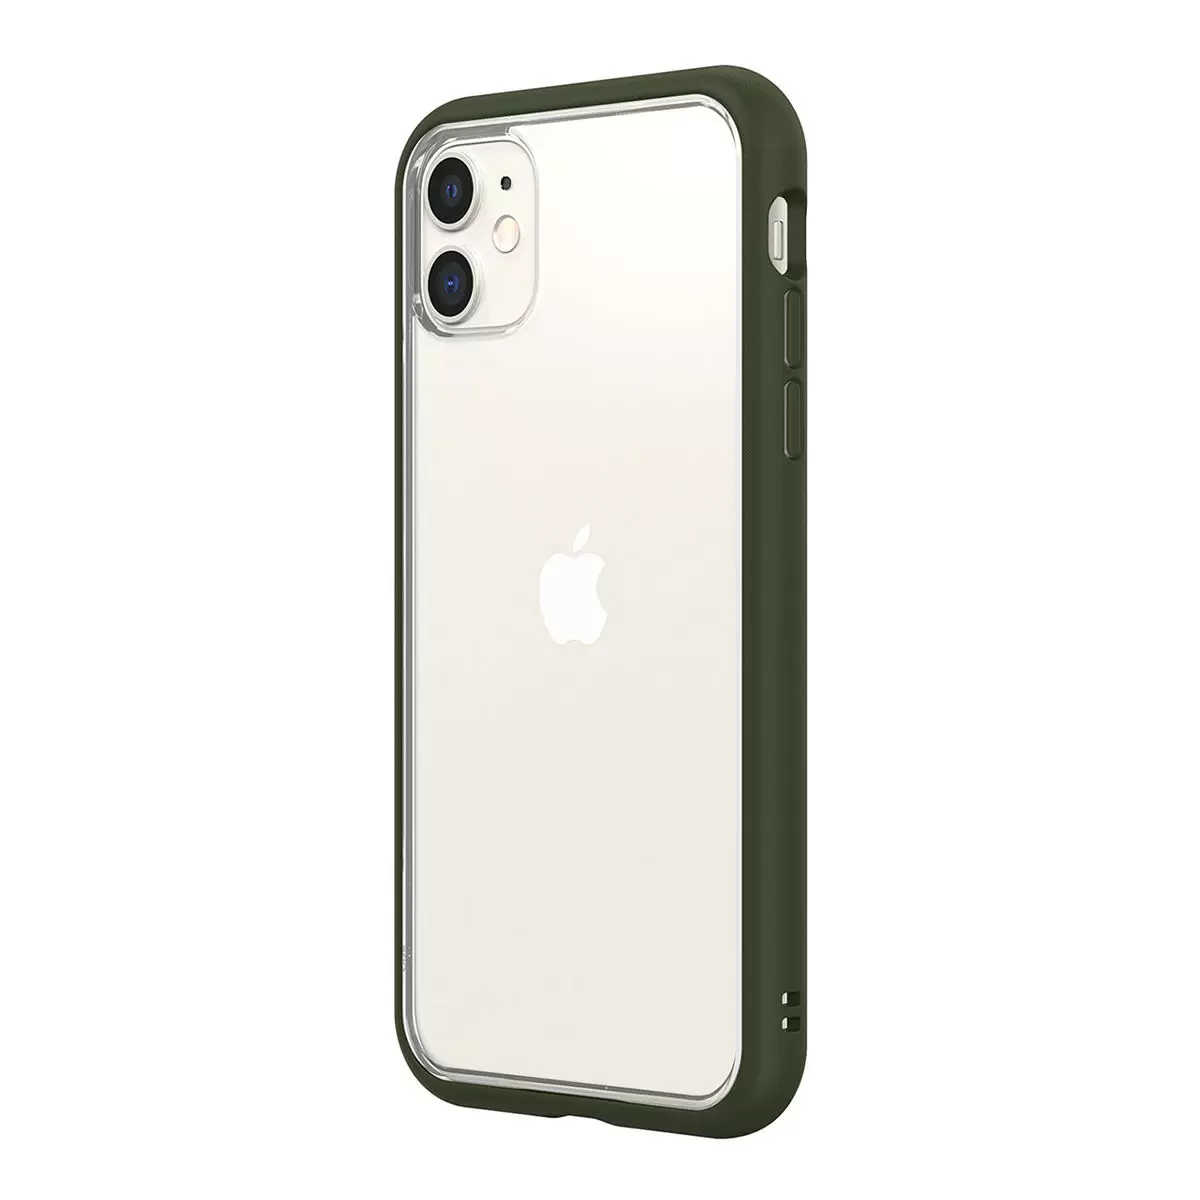 犀牛盾 iPhone 11 MOD NX 防摔手機殼 + 9H 3D 滿版螢幕玻璃保護貼 軍綠